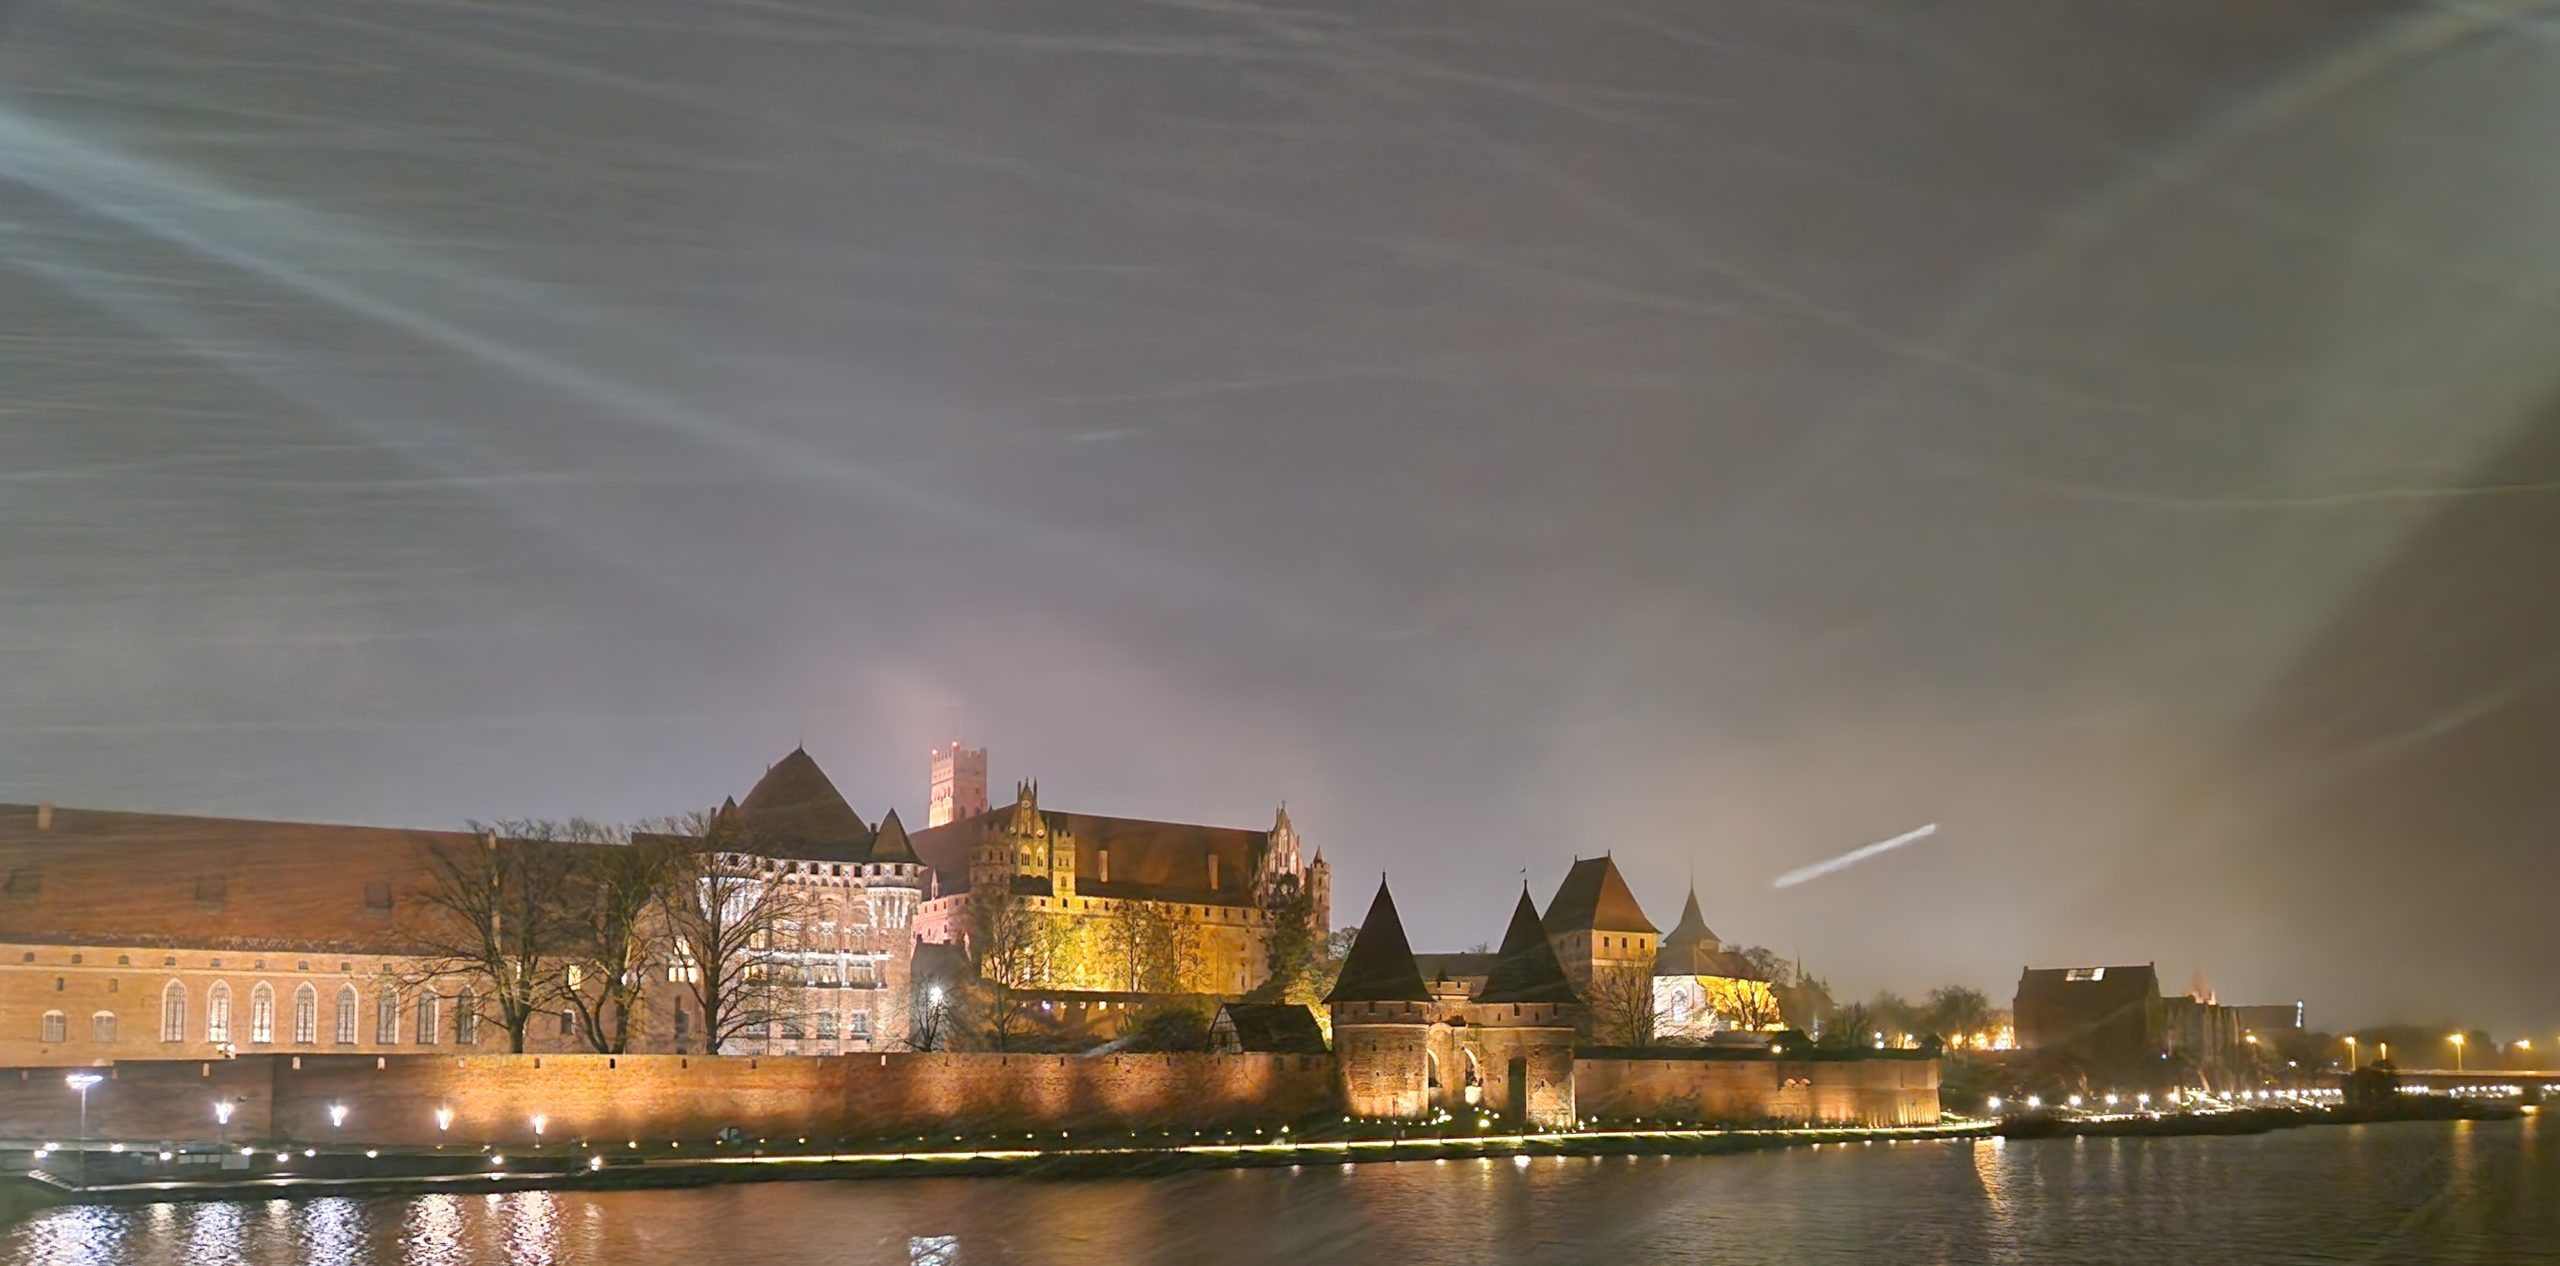 Zamek w Malborku oświetlony nocą.